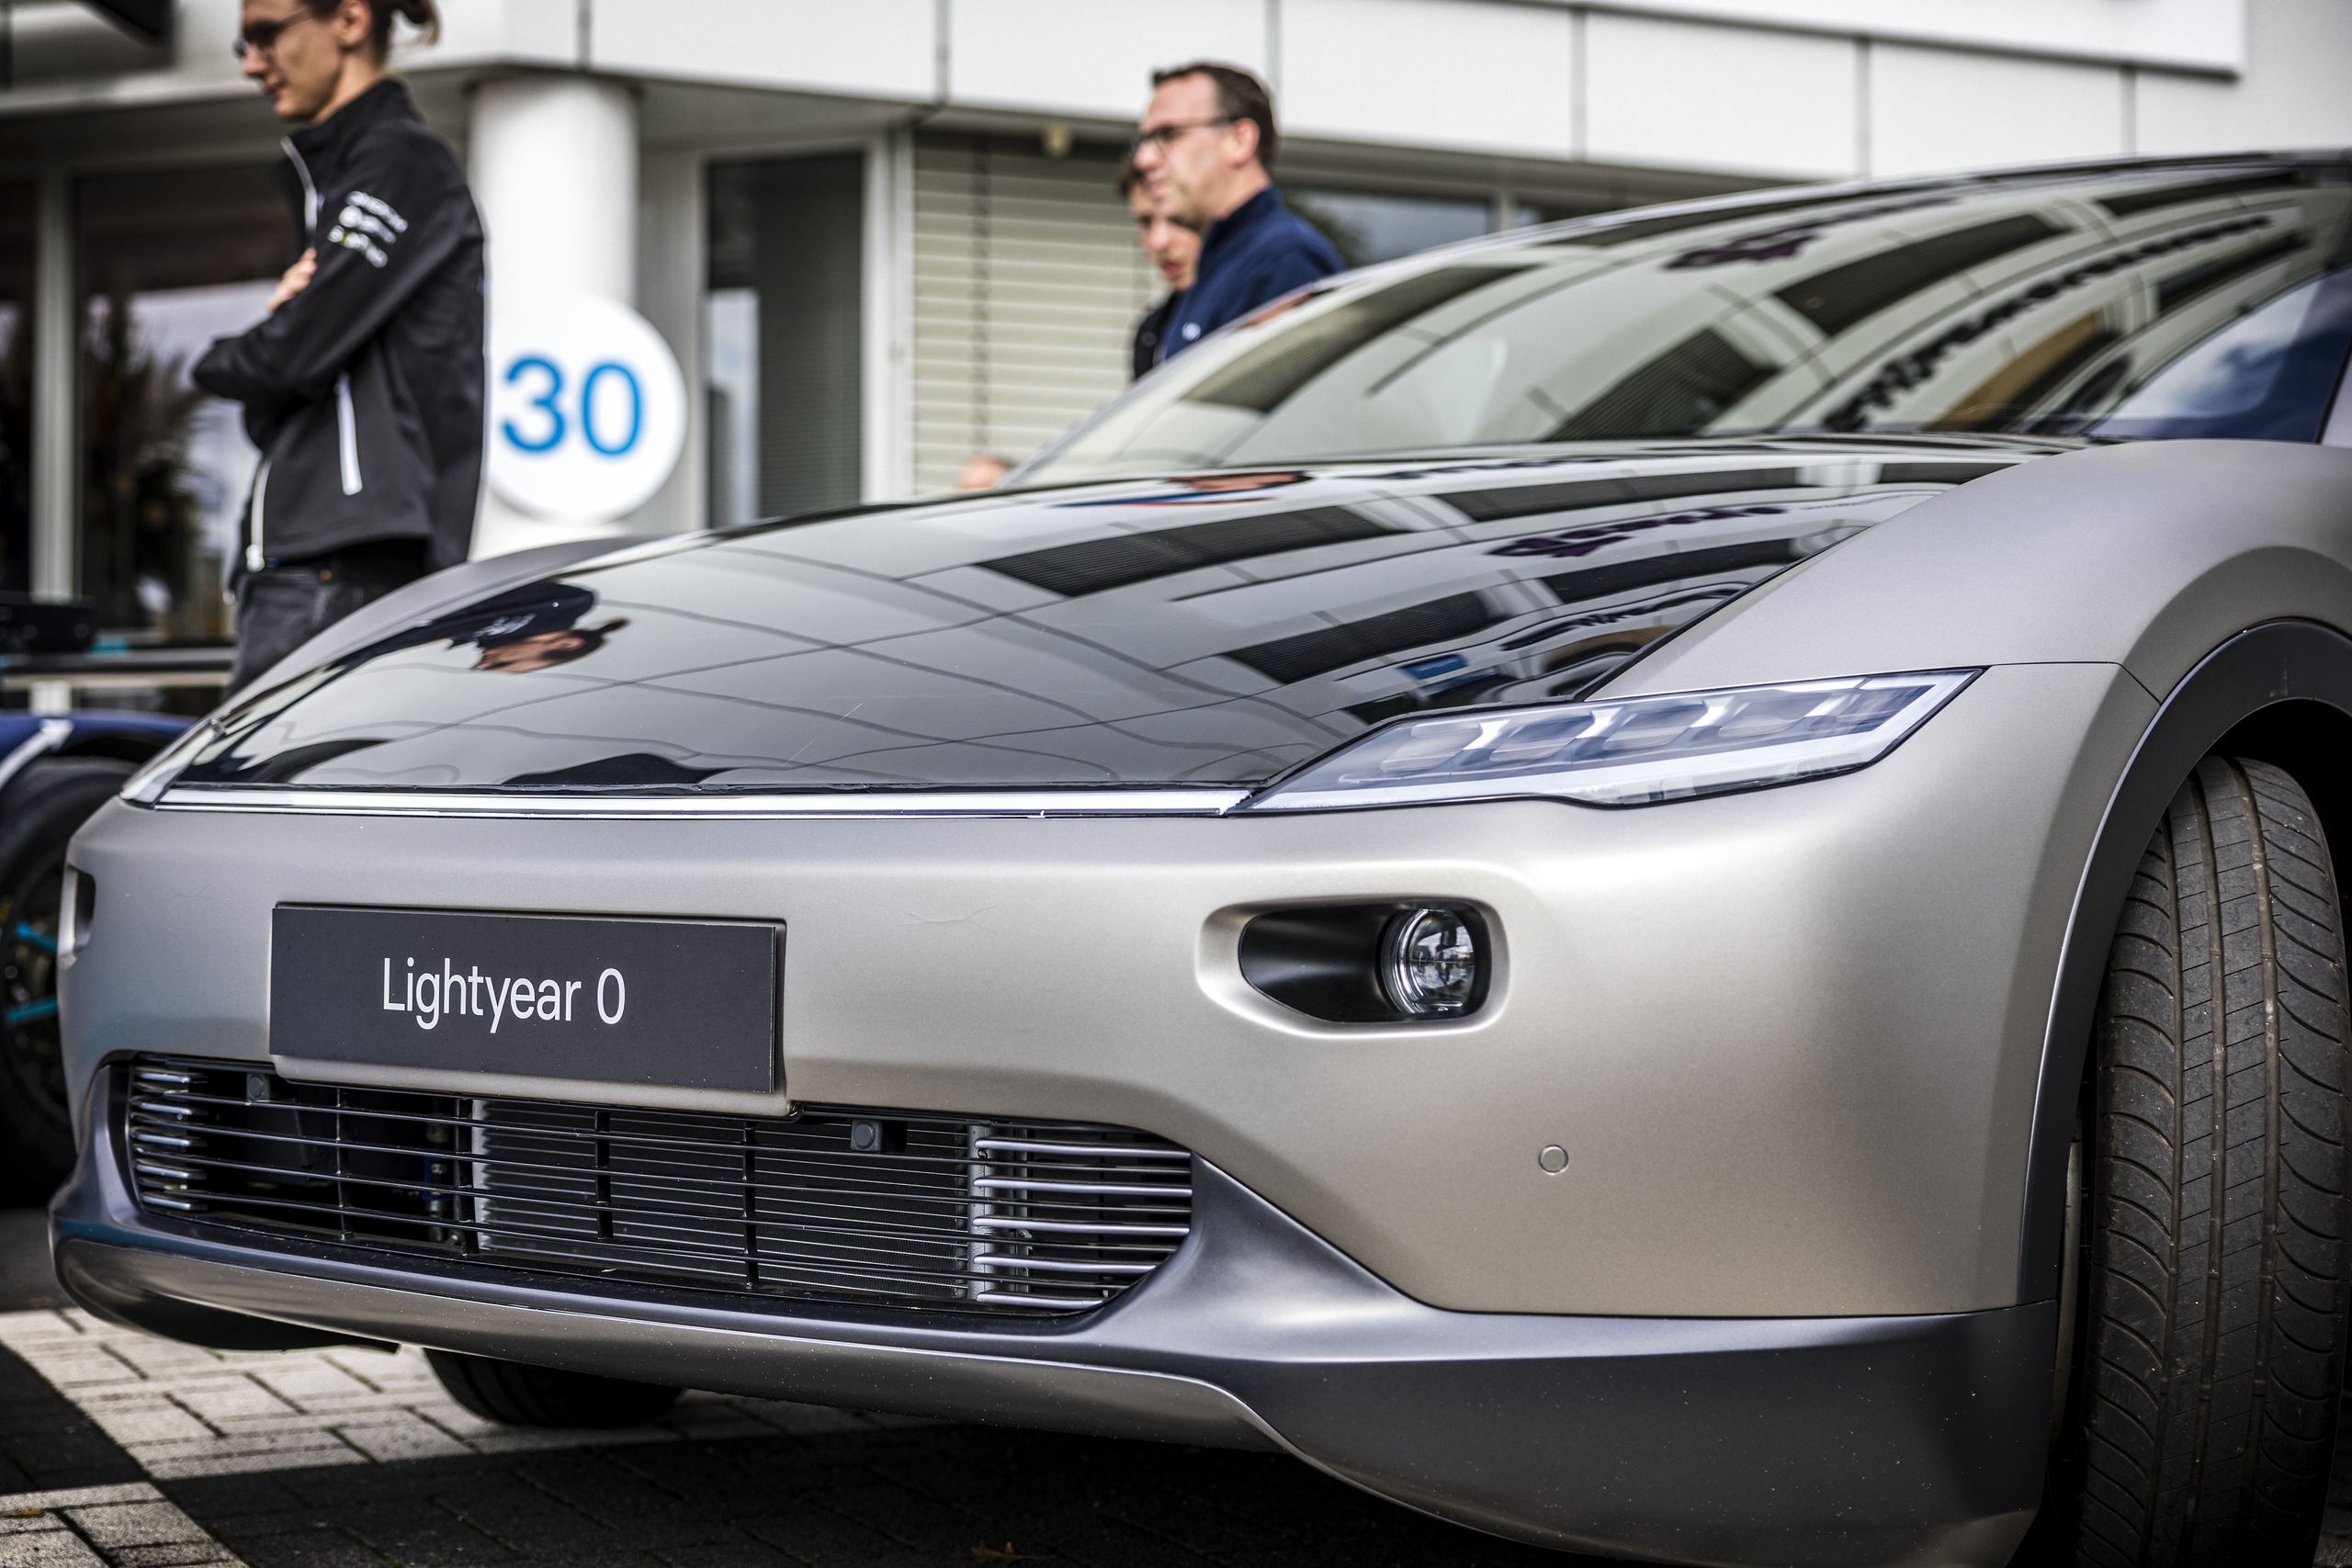 De Lightyear 0, het eerste en duurste model zonneauto van de Helmondse fabrikant. Inmiddels is de productie van de auto stopgezet.